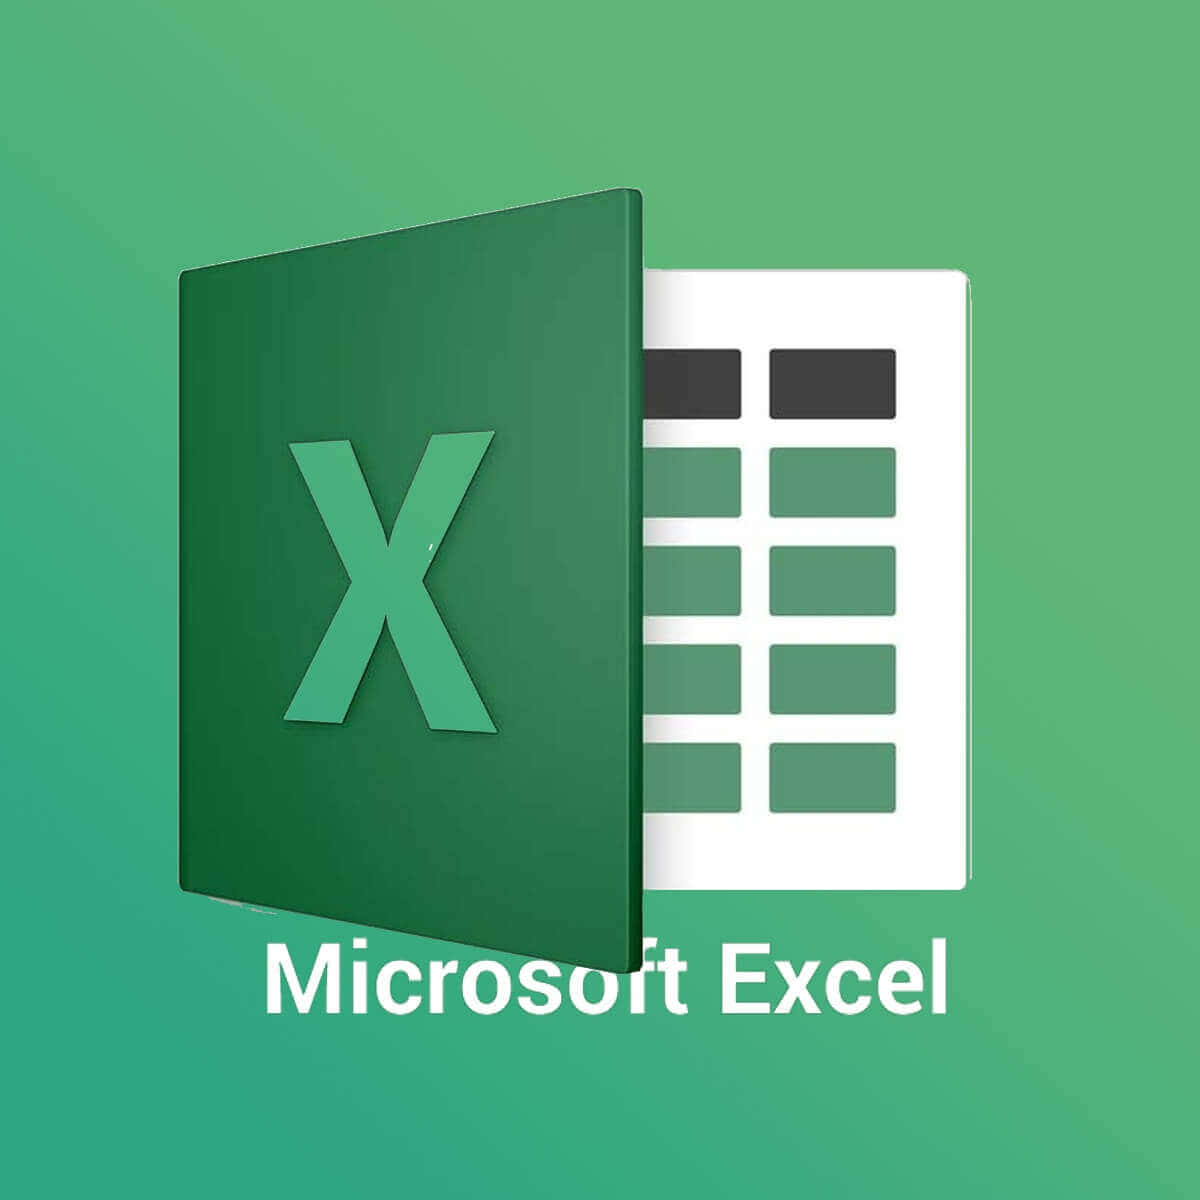 Microsoftexcel-logoet Med En Grøn Baggrund.